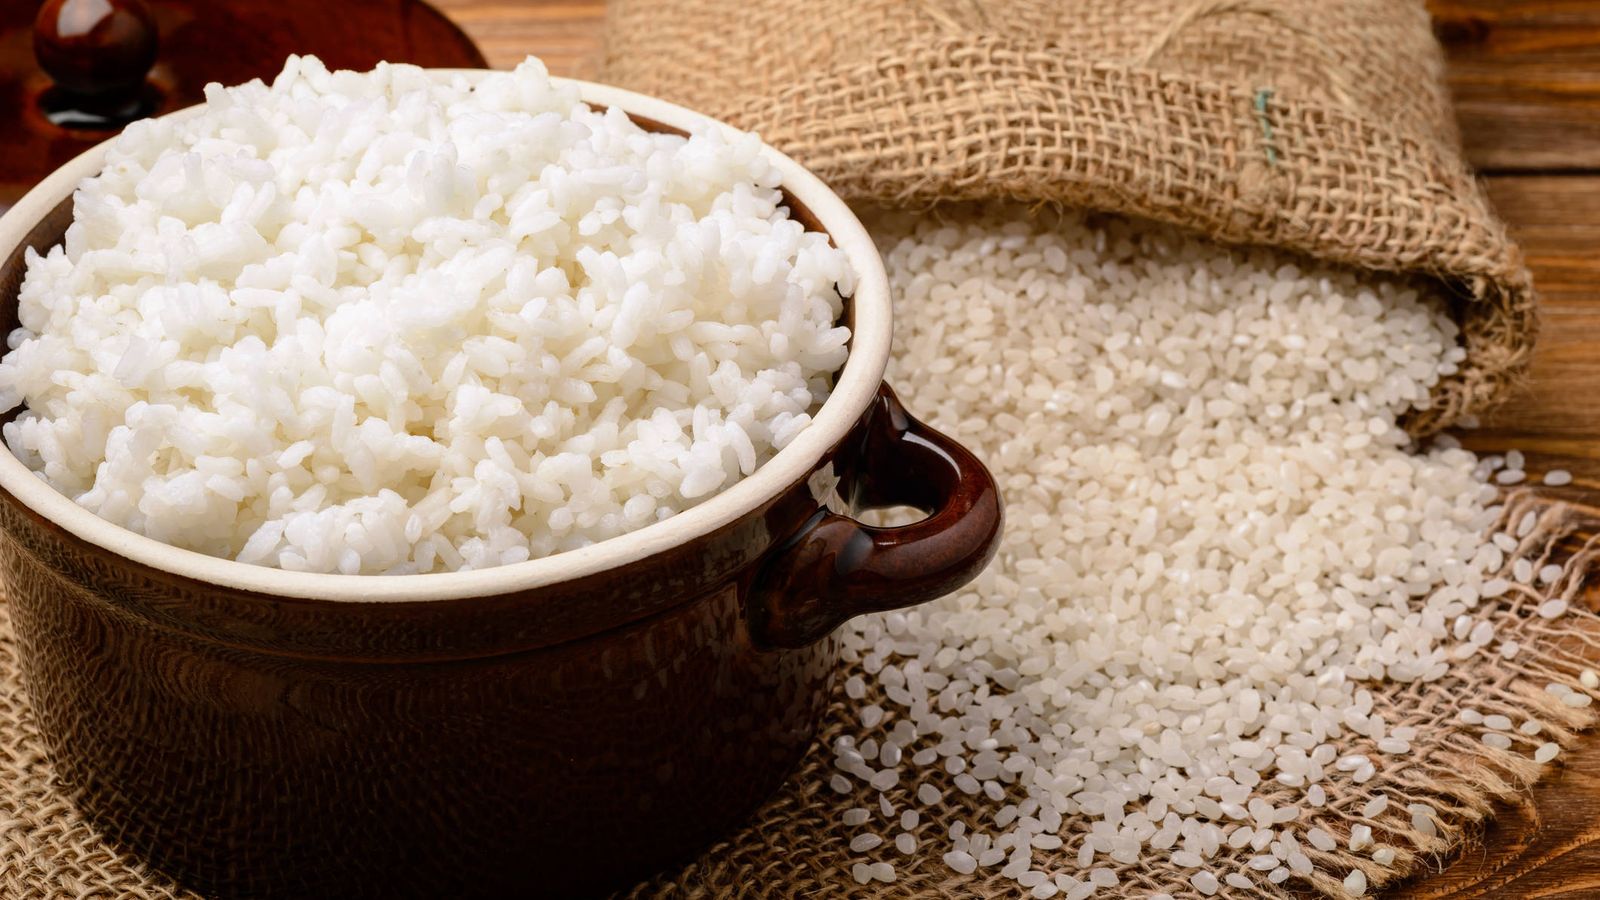 Alimentación: Por qué el arroz blanco es tan peligroso para la salud como el azúcar